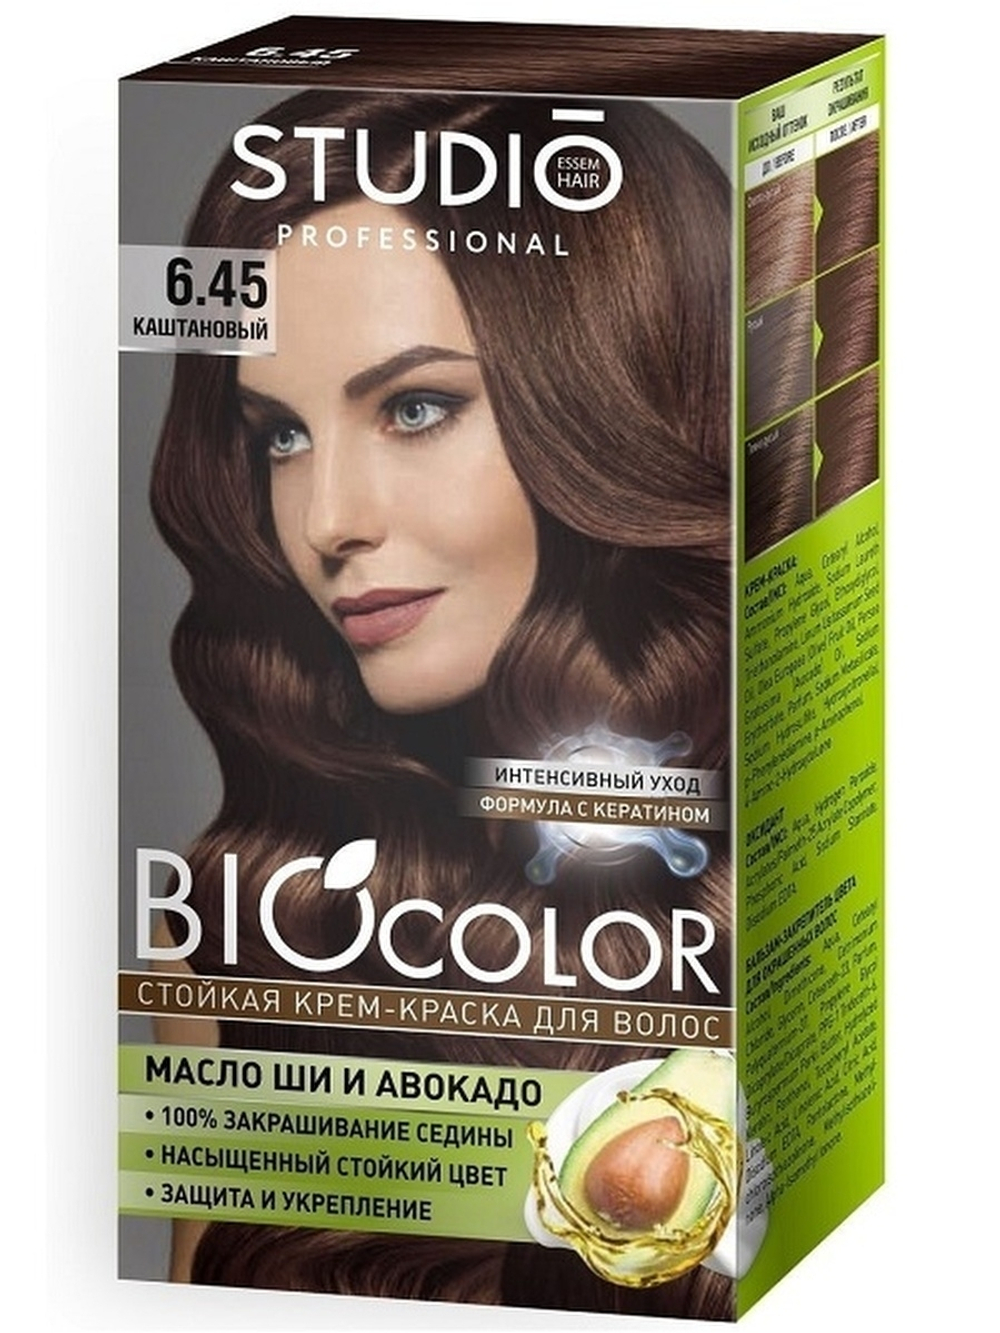 Essem Hair Studio Professional BioColor стойкая крем-краска для волос, 6.45 Каштановый, 115 мл